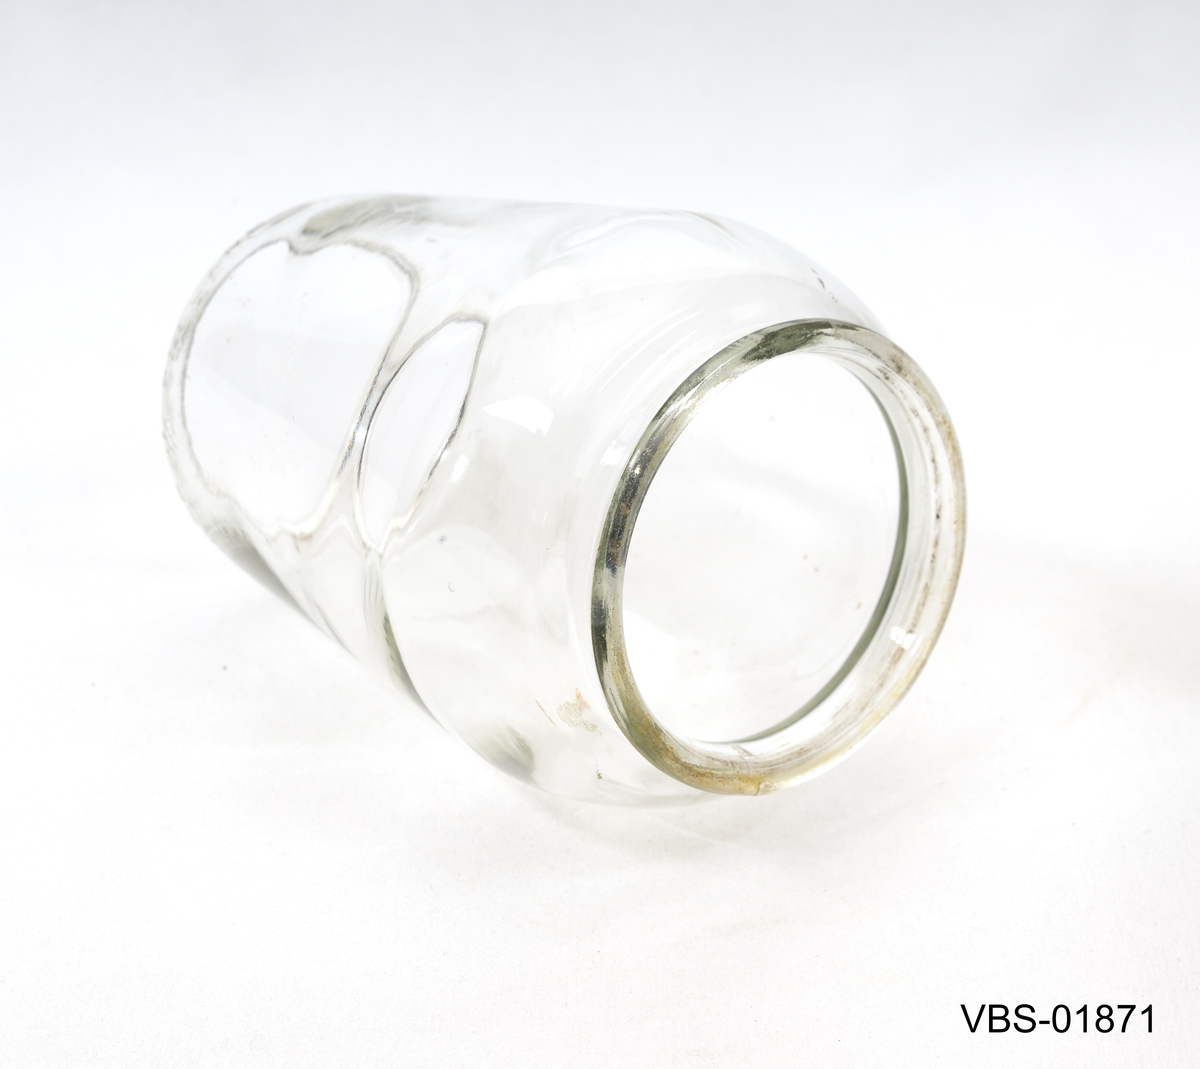 Glassskjerm som er en del av en karbidlampe (mangler)
Konisk i form, bredere i diameter nederst.